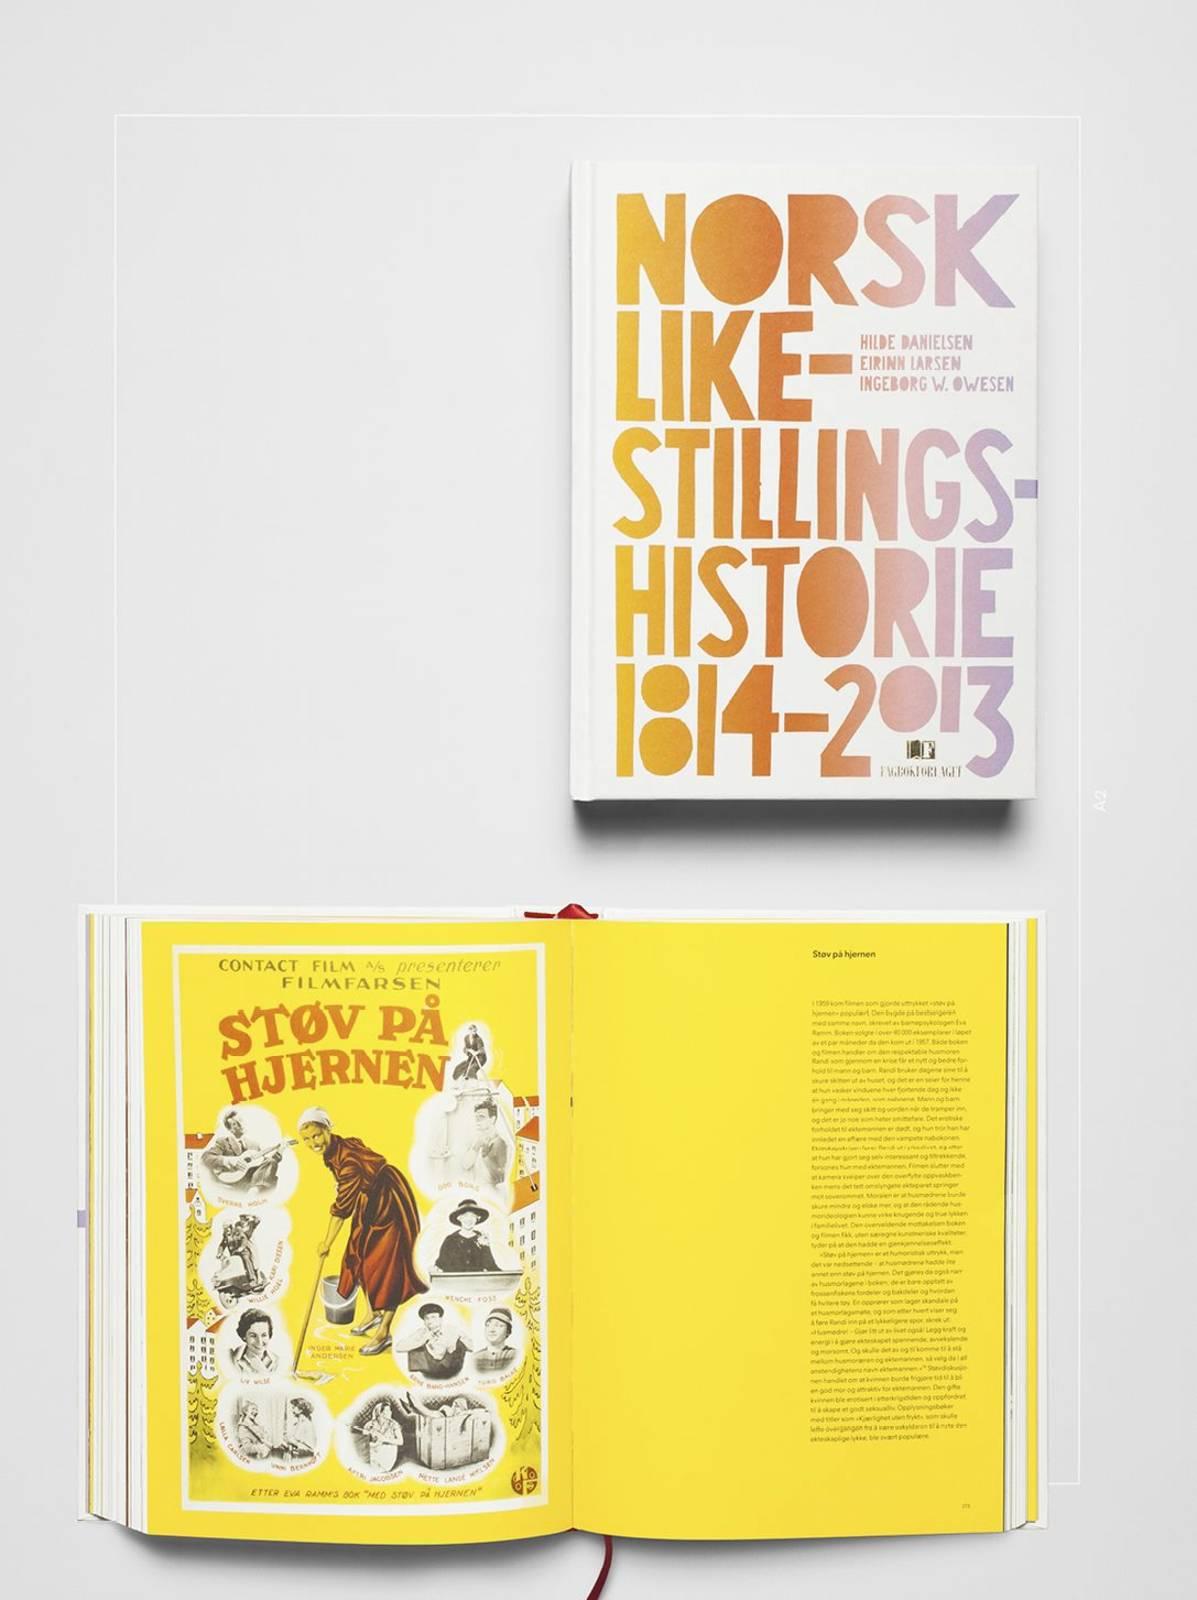 Et vakkert objekt med gjennomgående god formgiving, typografi, repro, trykk og binding, er juryens dom over <i>Norsk Likestillingshistorie 1814-2013</i>, med design av Rune Døli.